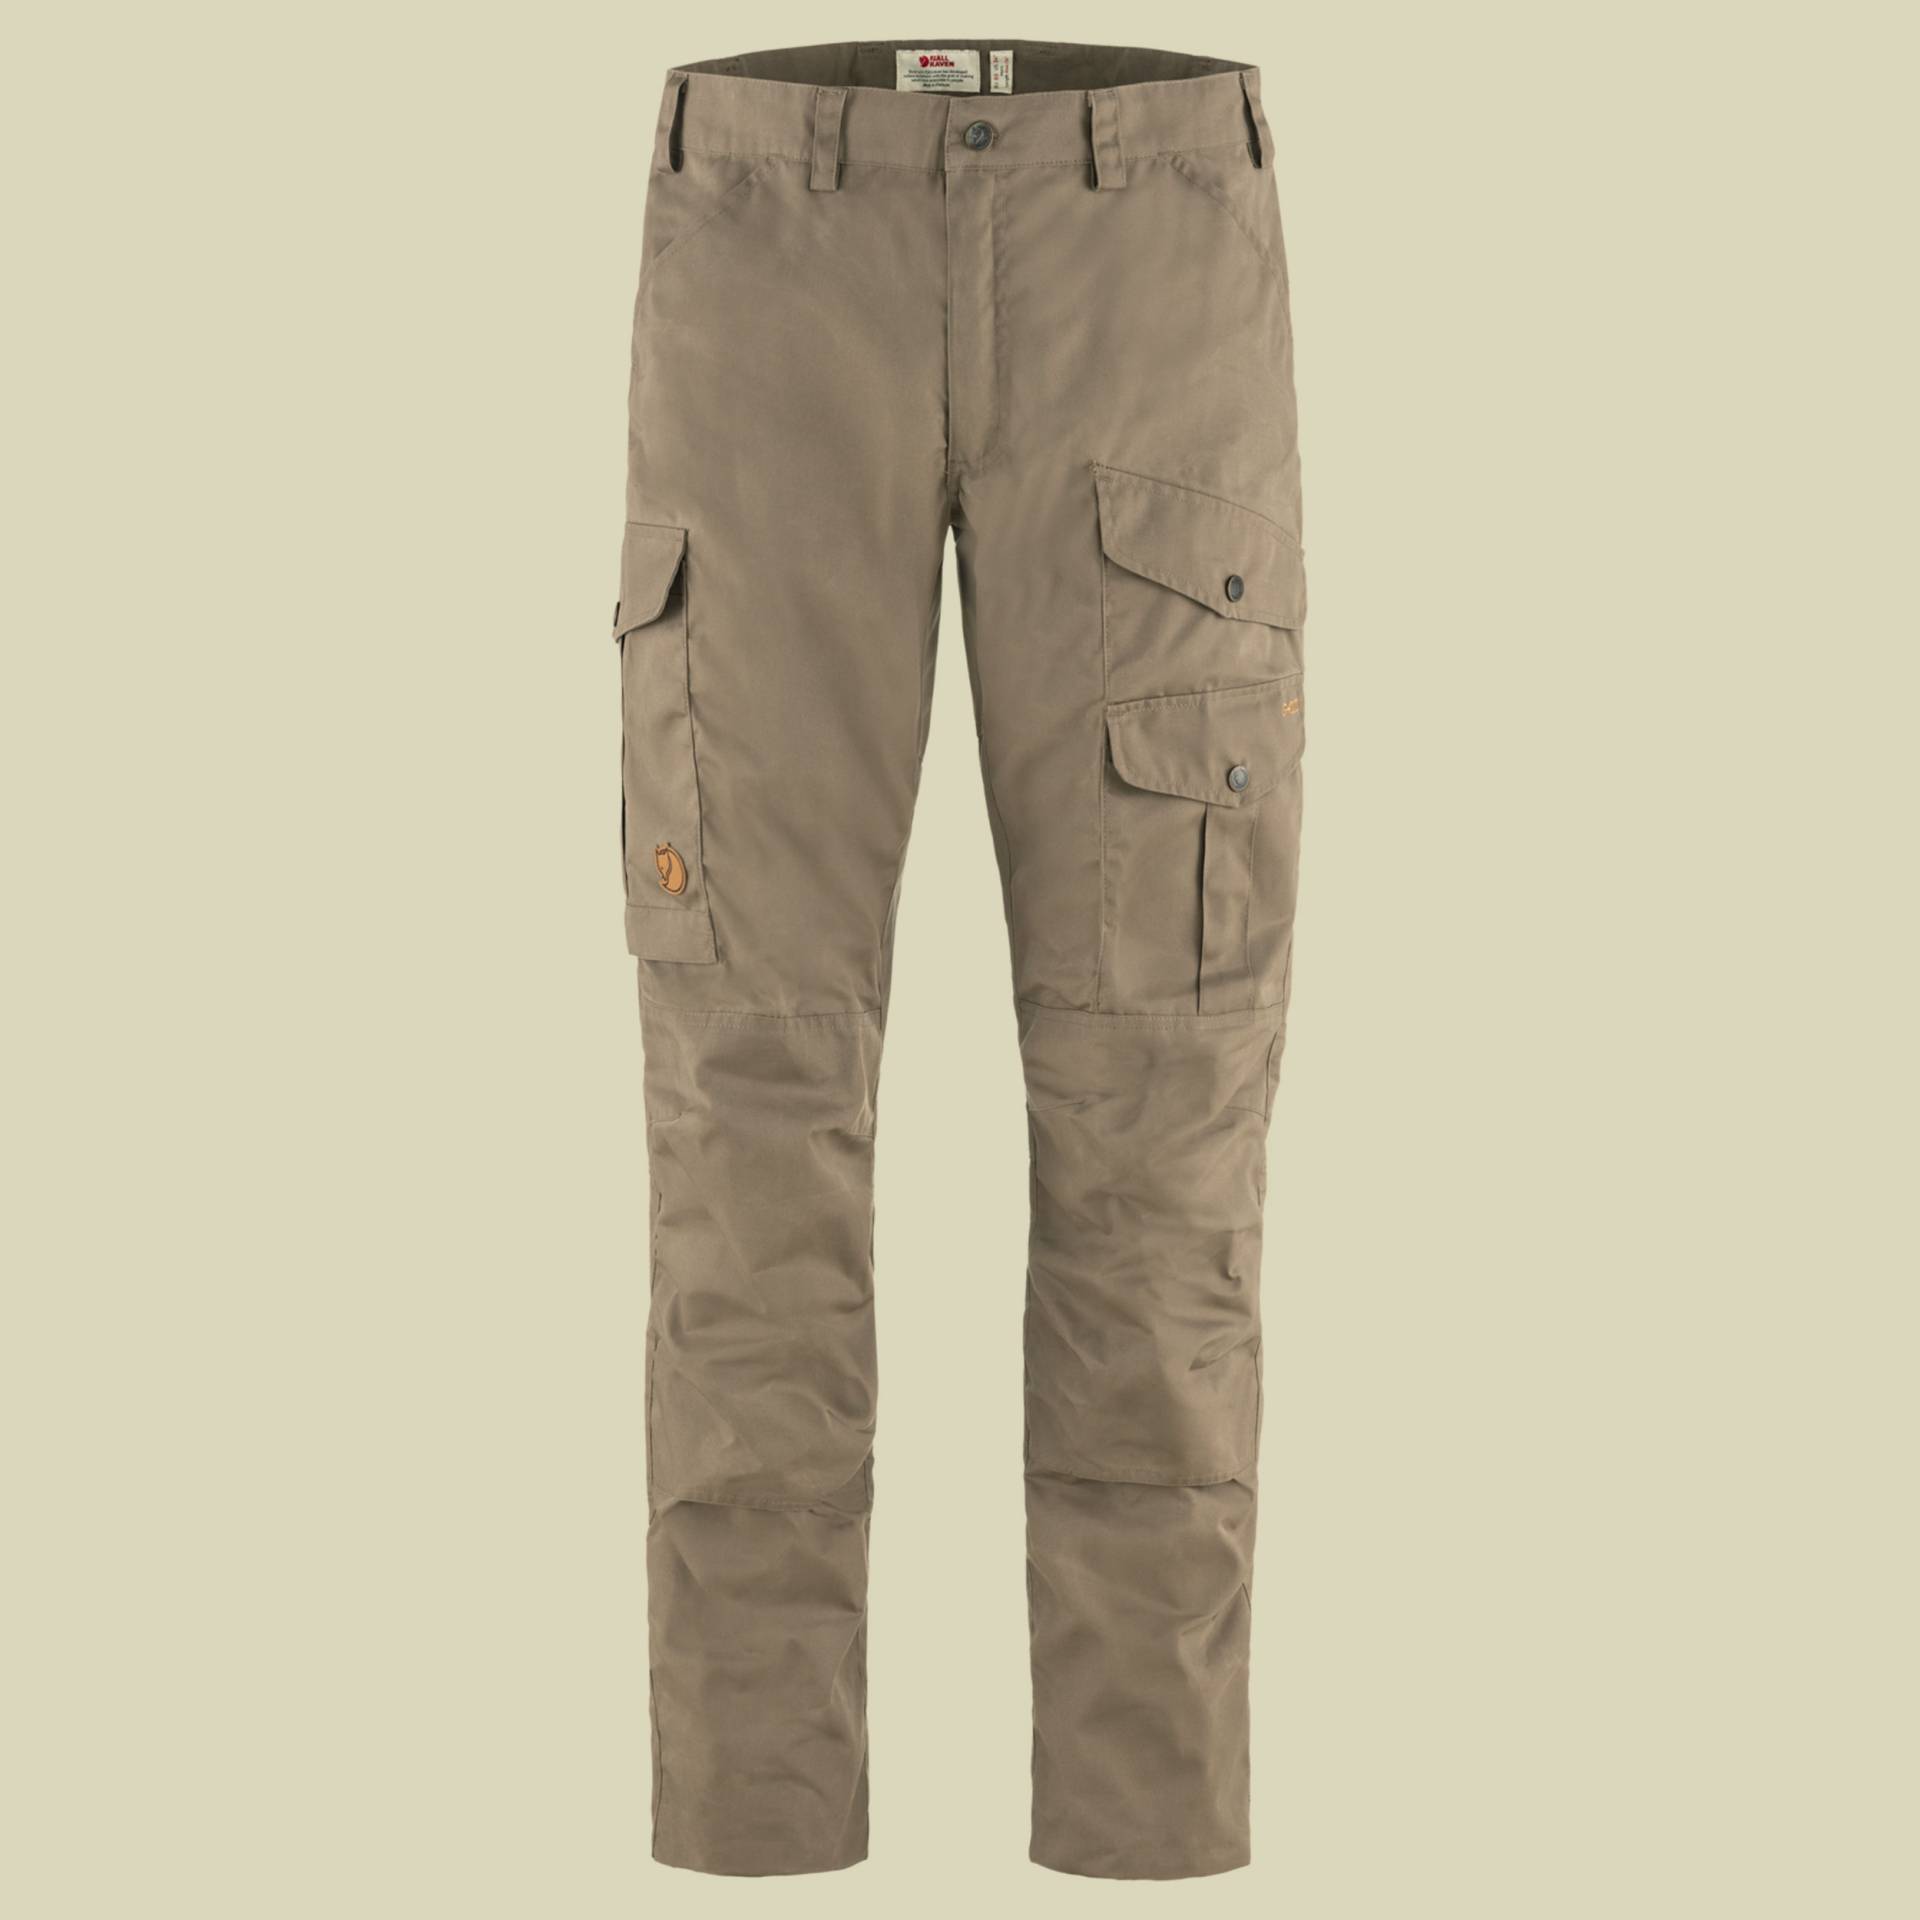 Barents Pro Trousers Men Größe 50 Farbe suede brown von Fjällräven